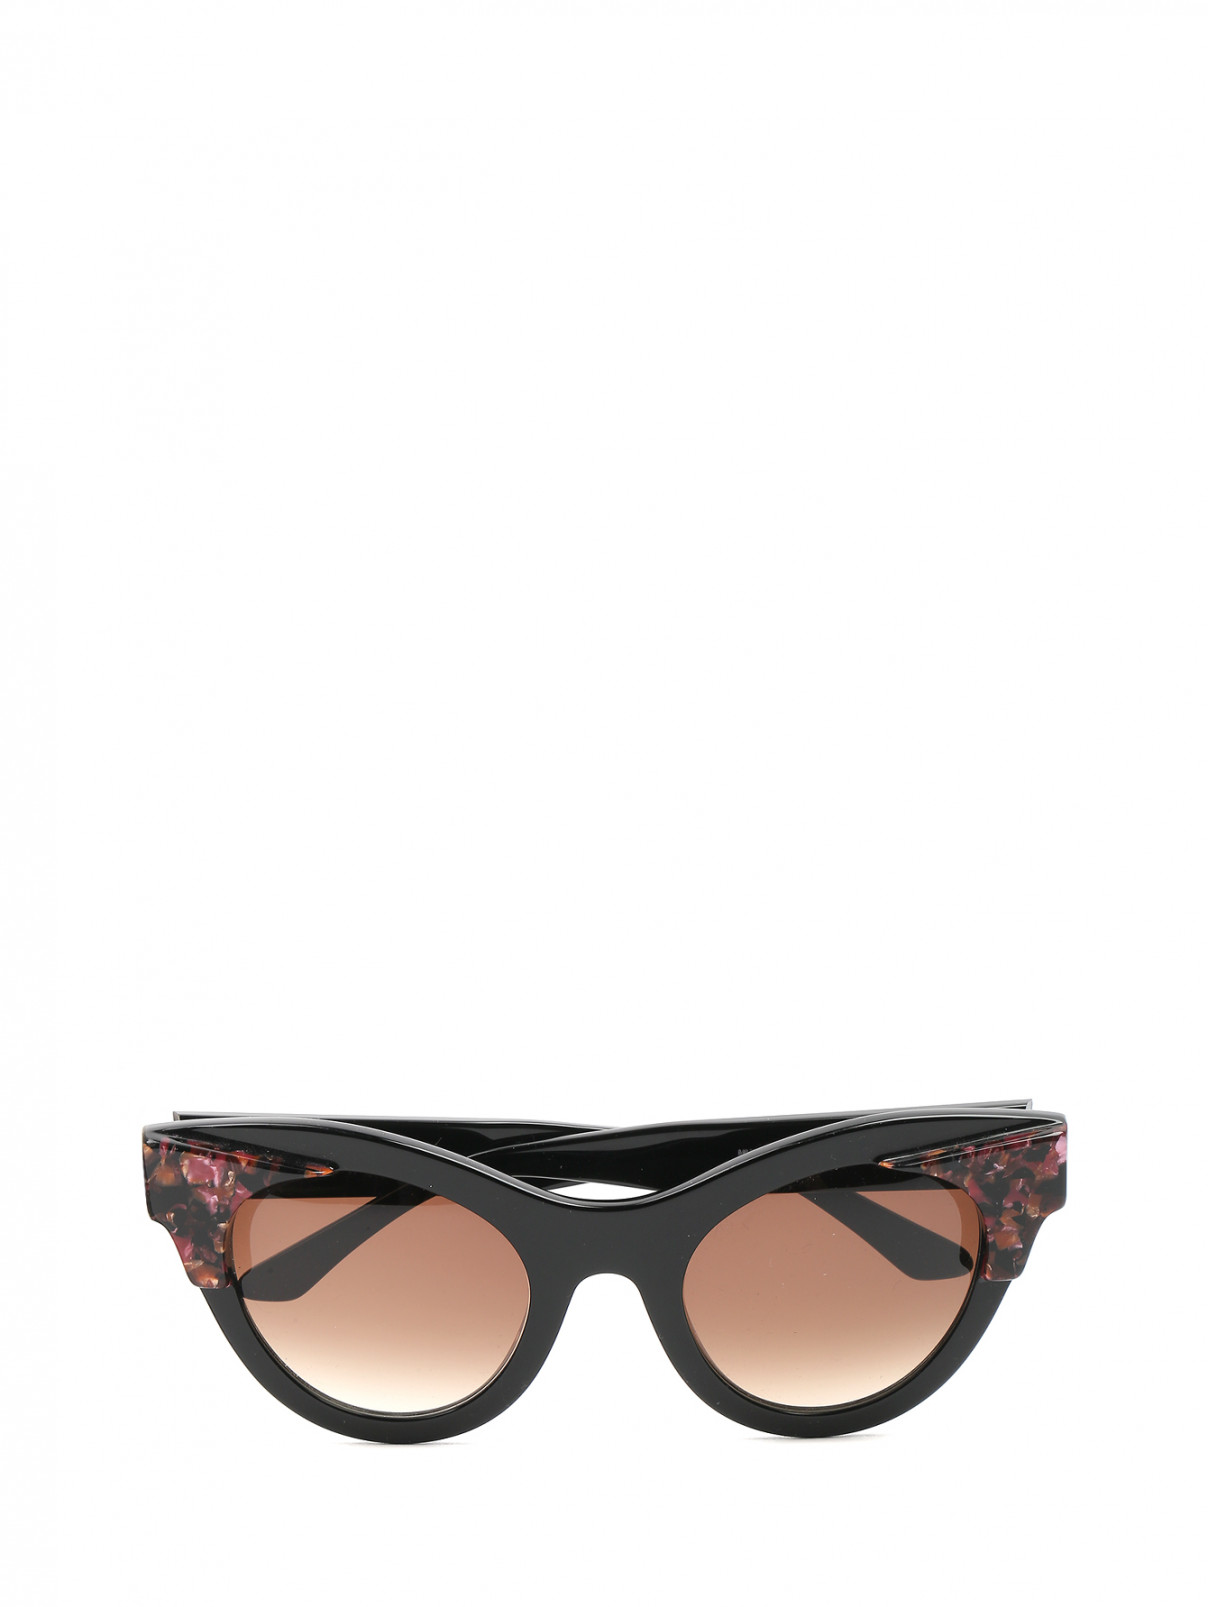 Cолнцезащитные очки с контрастной отделкой Thierry Lasry  –  Общий вид  – Цвет:  Черный